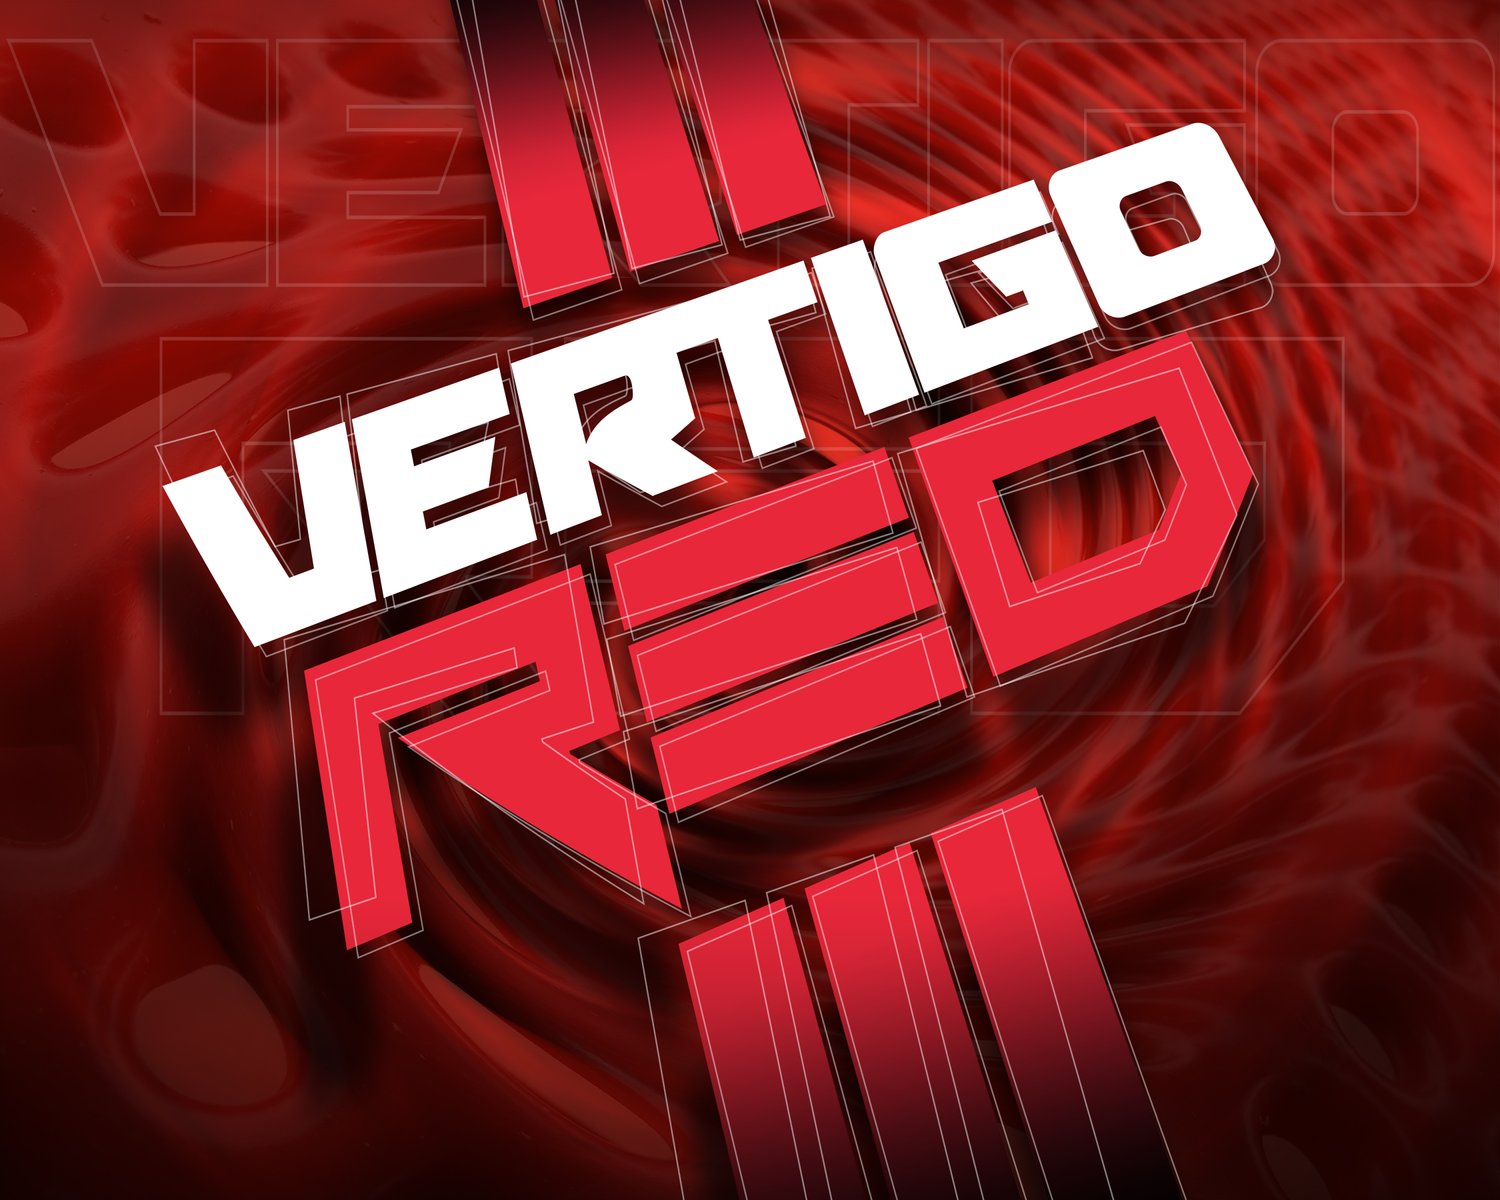 Vertigo Red